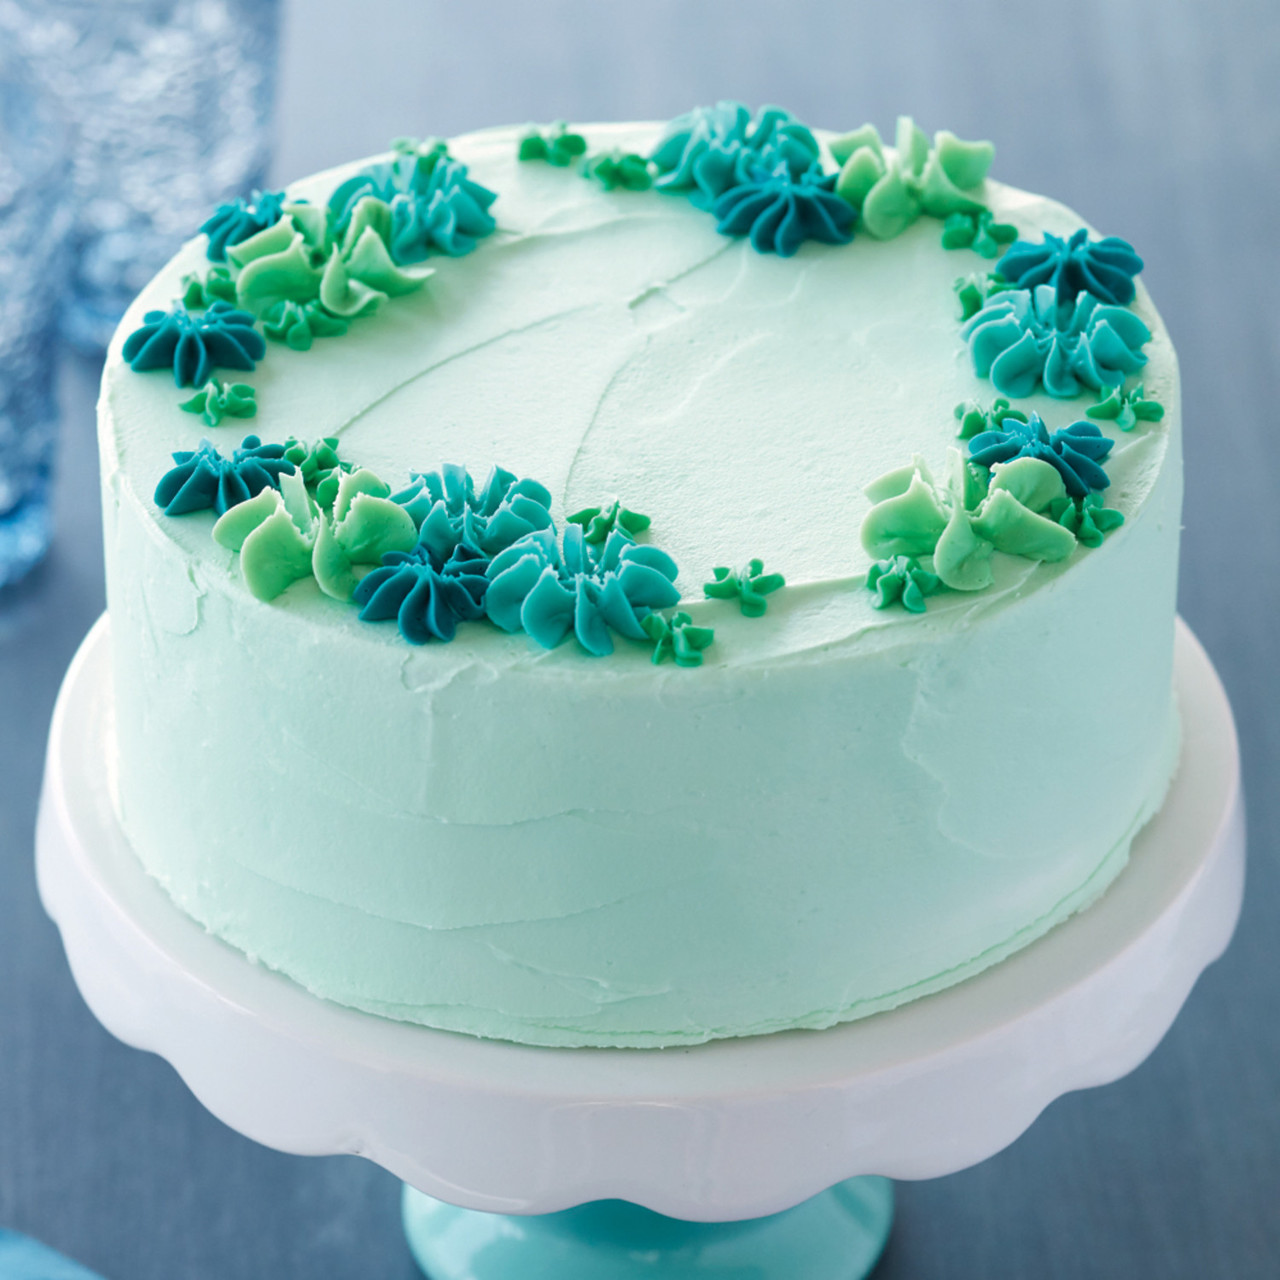 Green Velvet Cake Recipe - Food.com